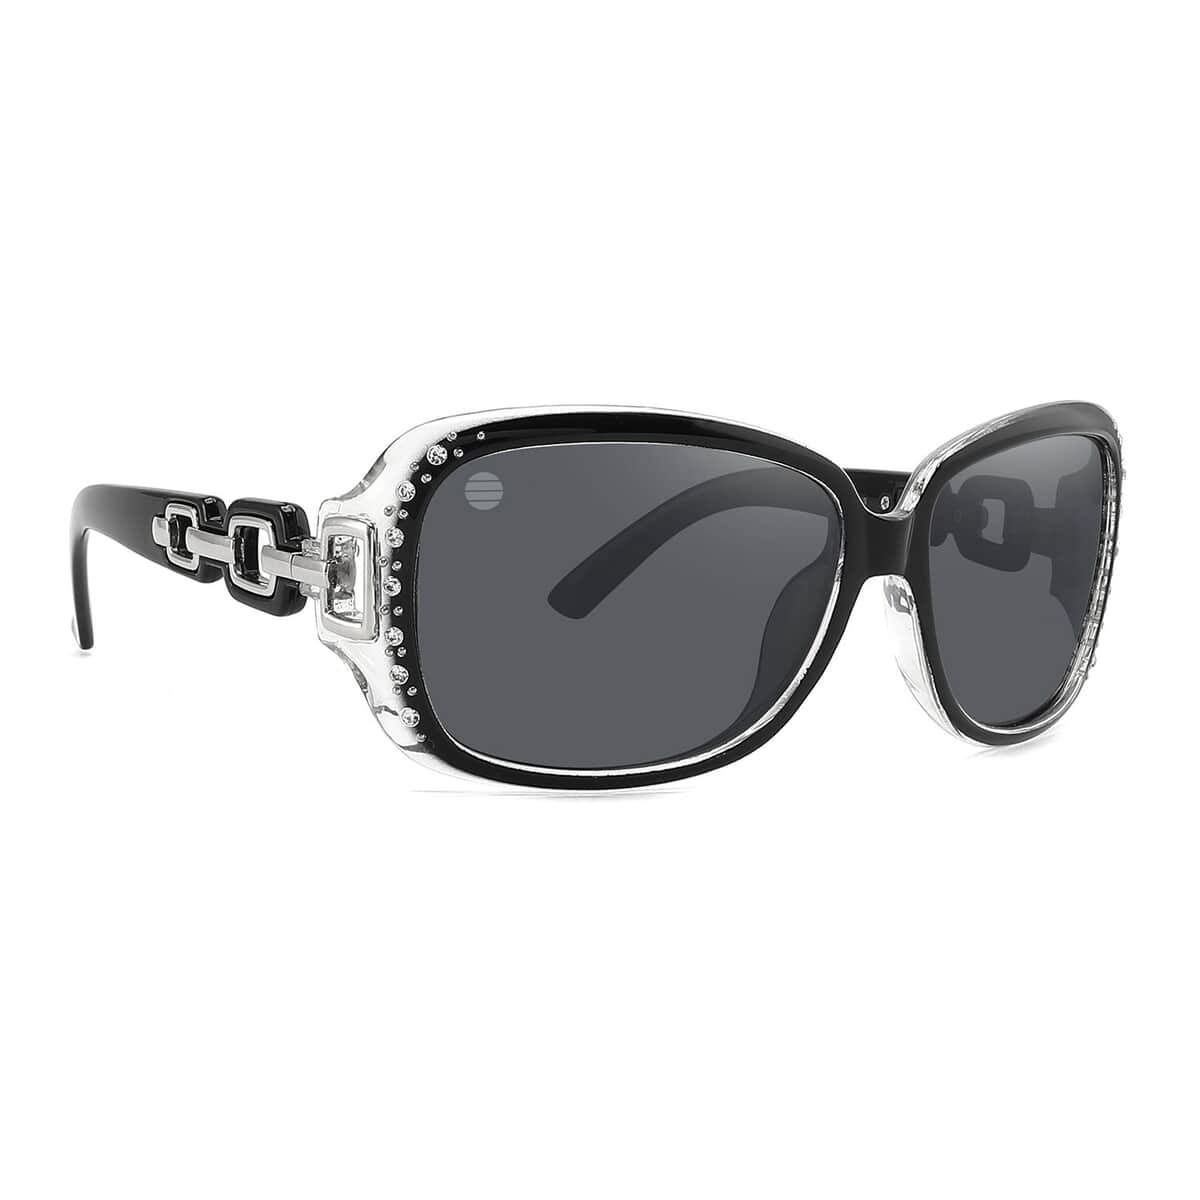 SolarX Black Fashion Linked Polarized Sunglasses with Rhinestones image number 0